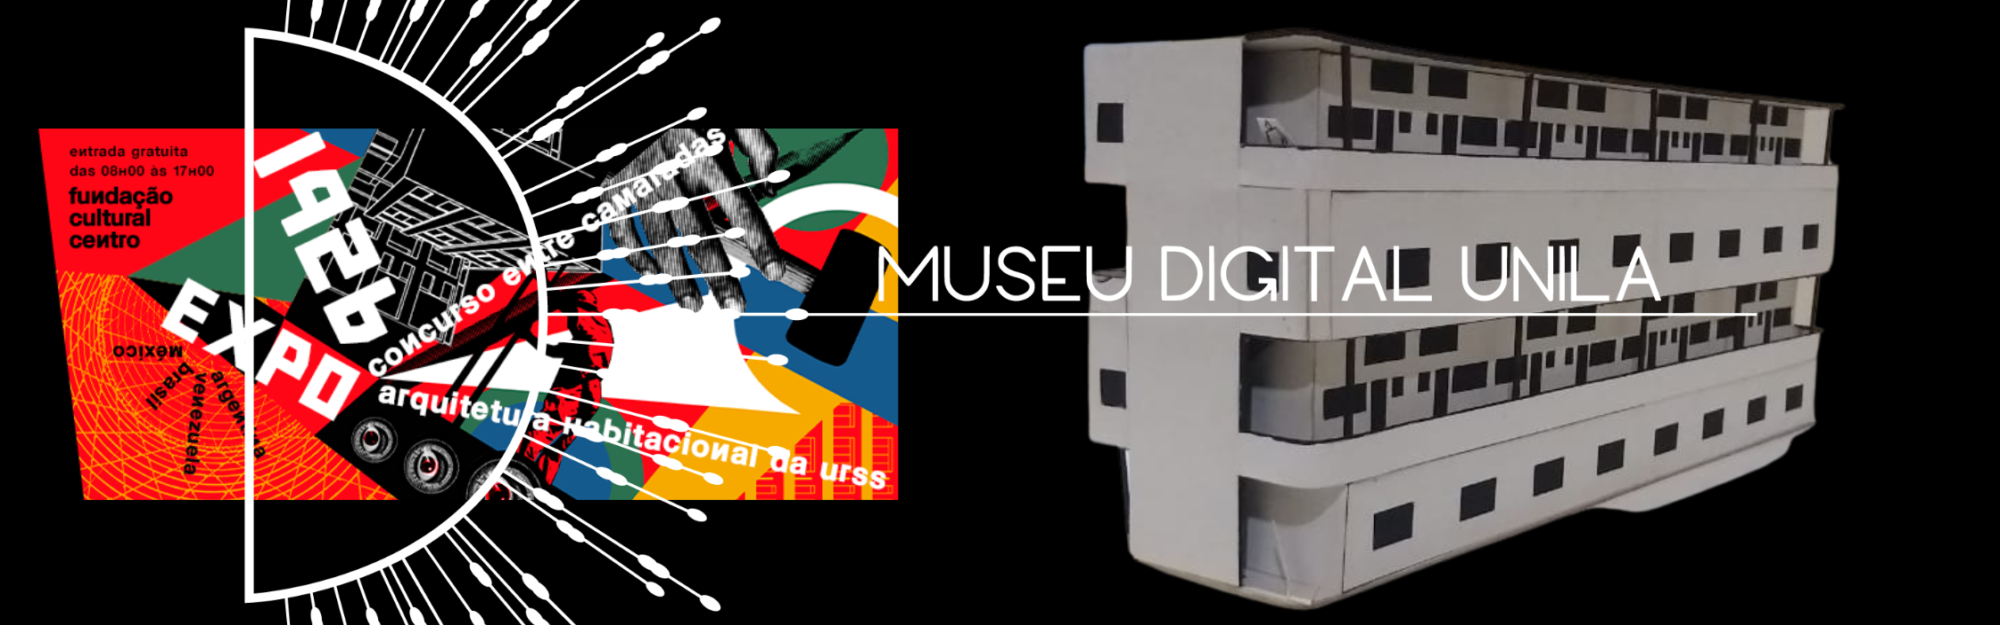 Museu Digital Unila